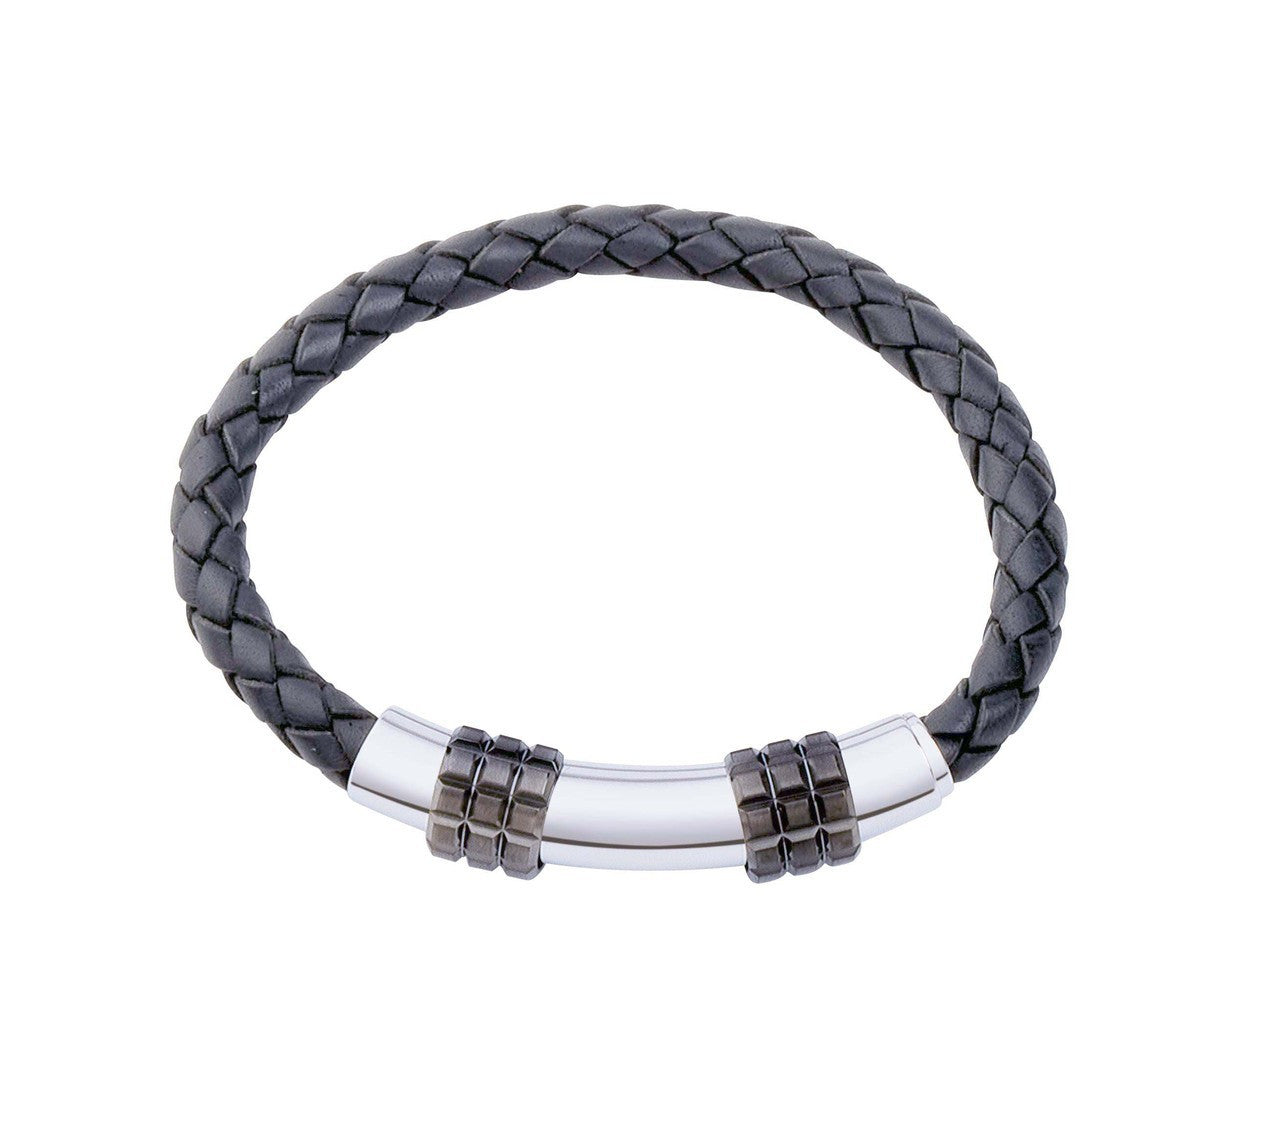 INB18 leather and steel adjustable bracelet